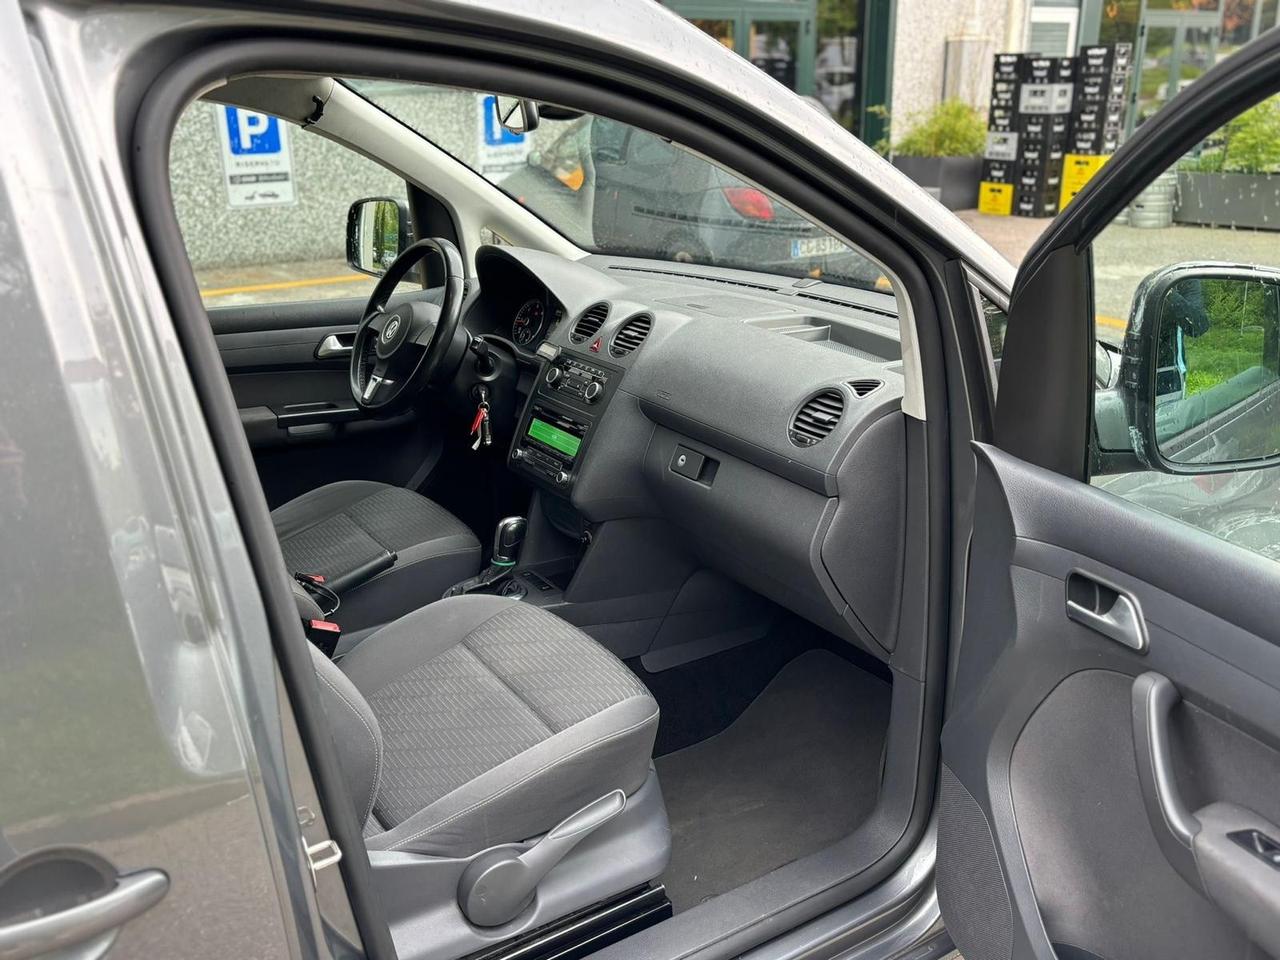 Volkswagen Caddy 2.0 TDI 140 CV DSG 5p. Comfortline